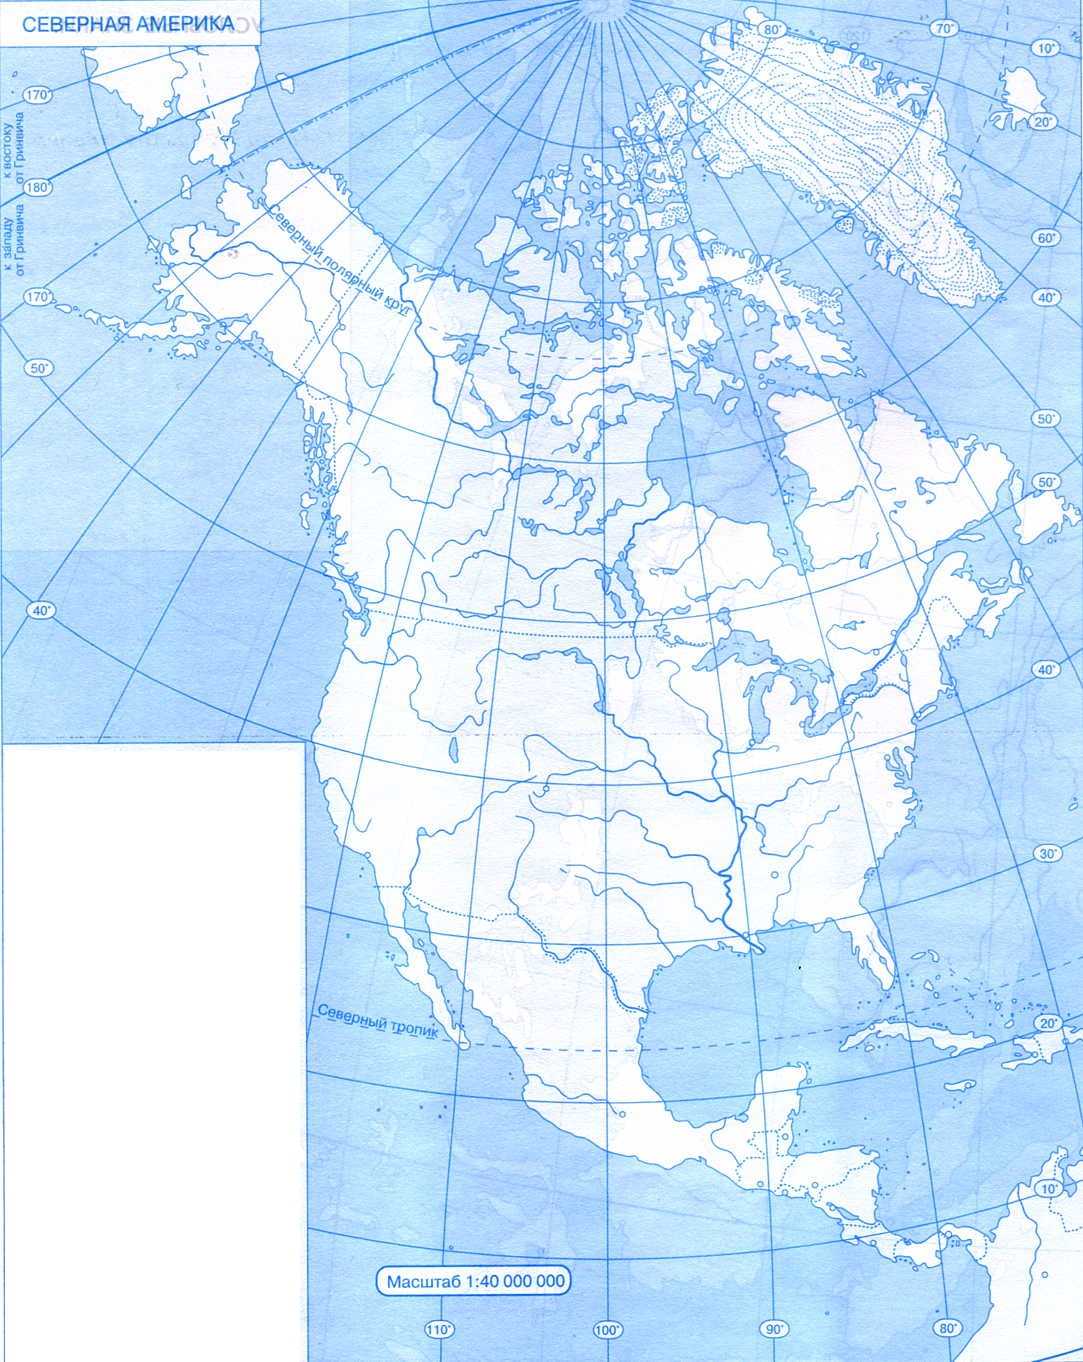 Береговая линия северной америки на карте контурной. Карта Северной Америки контурная карта. Контурная ката Северной Омерики\. Контурная карта севернойтамерики. Контурная карта севеонойа мерики.